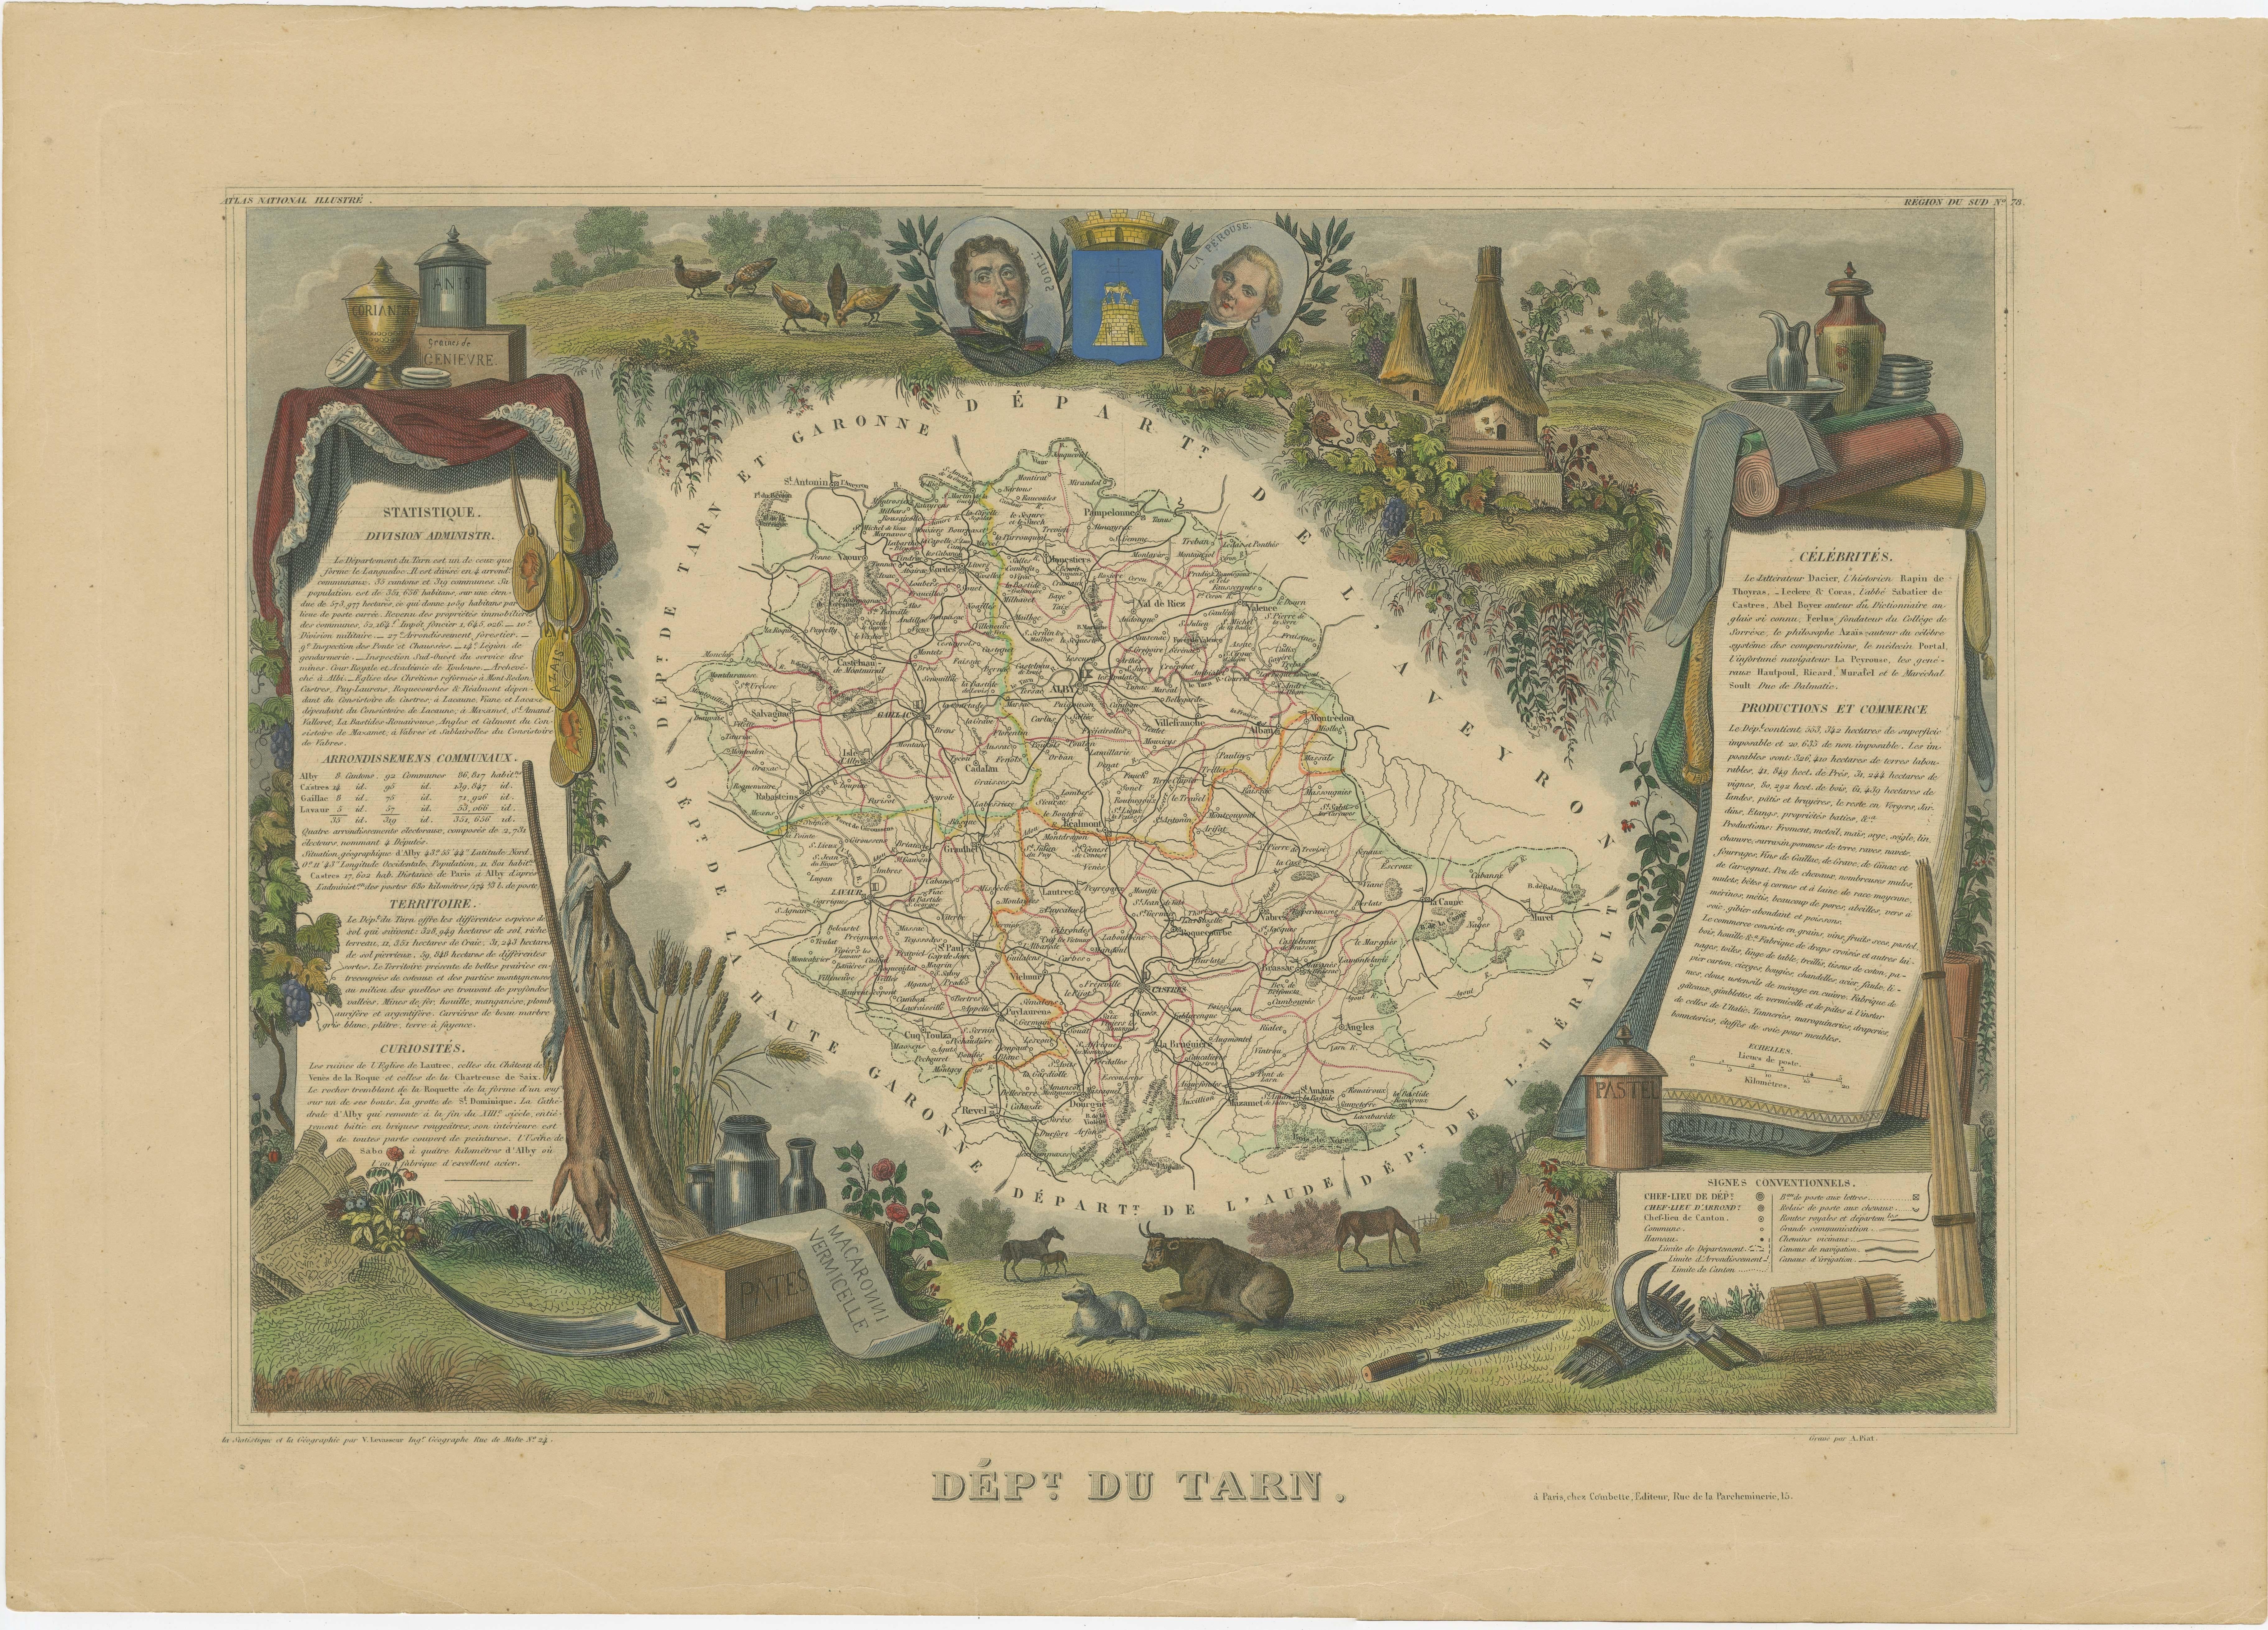 Antike Karte mit dem Titel 'Dépt. du Tarn'. Karte des französischen Departements Tarn, Frankreich. In diesem Gebiet wird eine Vielzahl von traditionellen Weinen hergestellt, darunter Cahors, Mauzac, Loin de l'Oeil und Ondenc für die Weißweine und